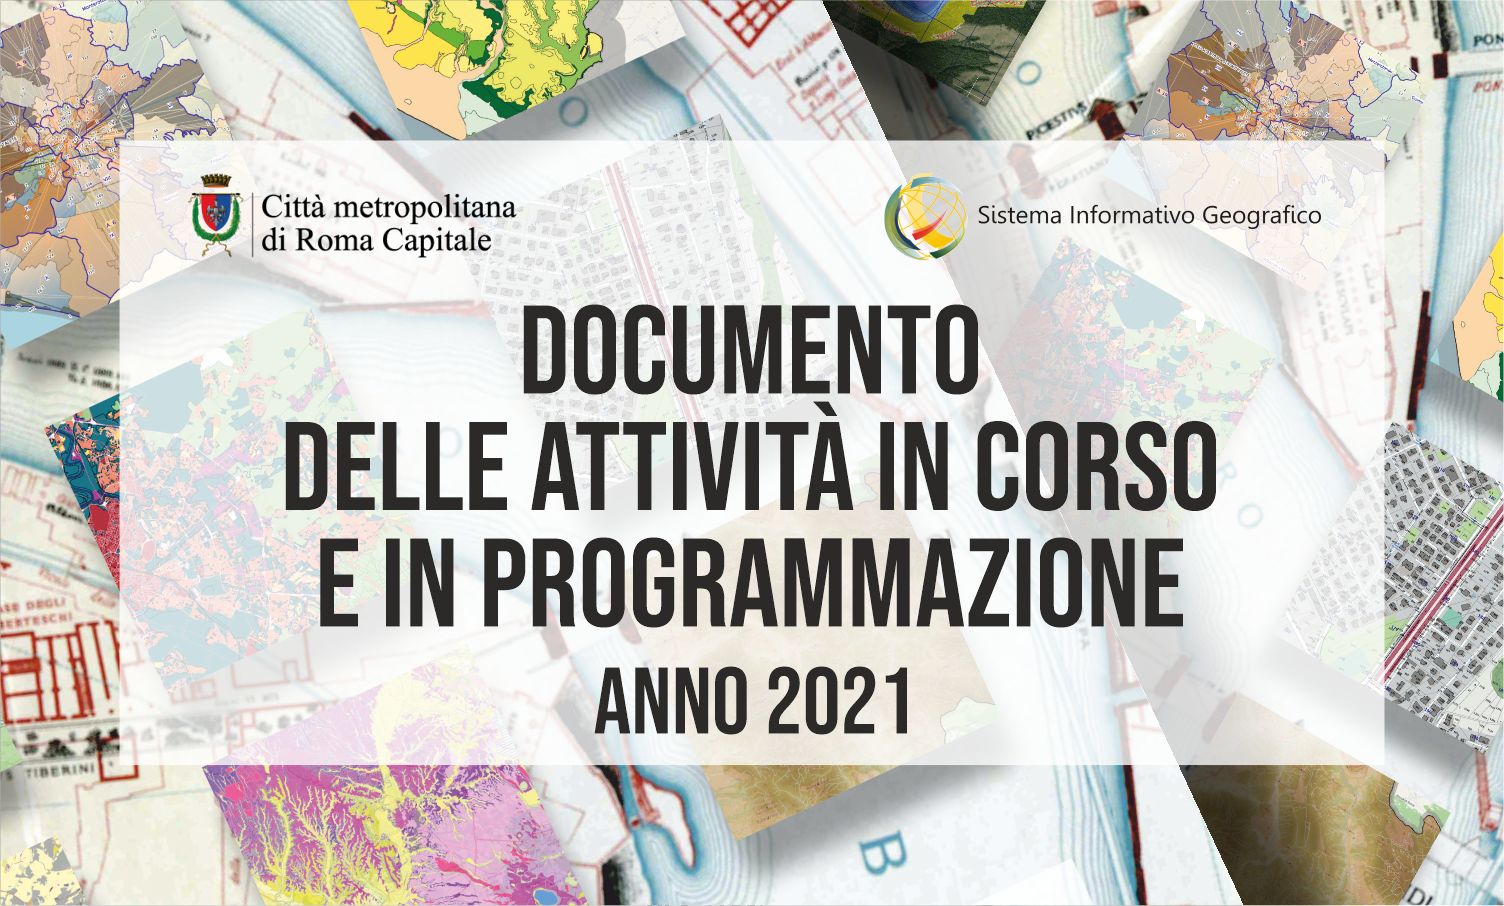 Documento delle Attività in Corso e in Programmazione anno 2021